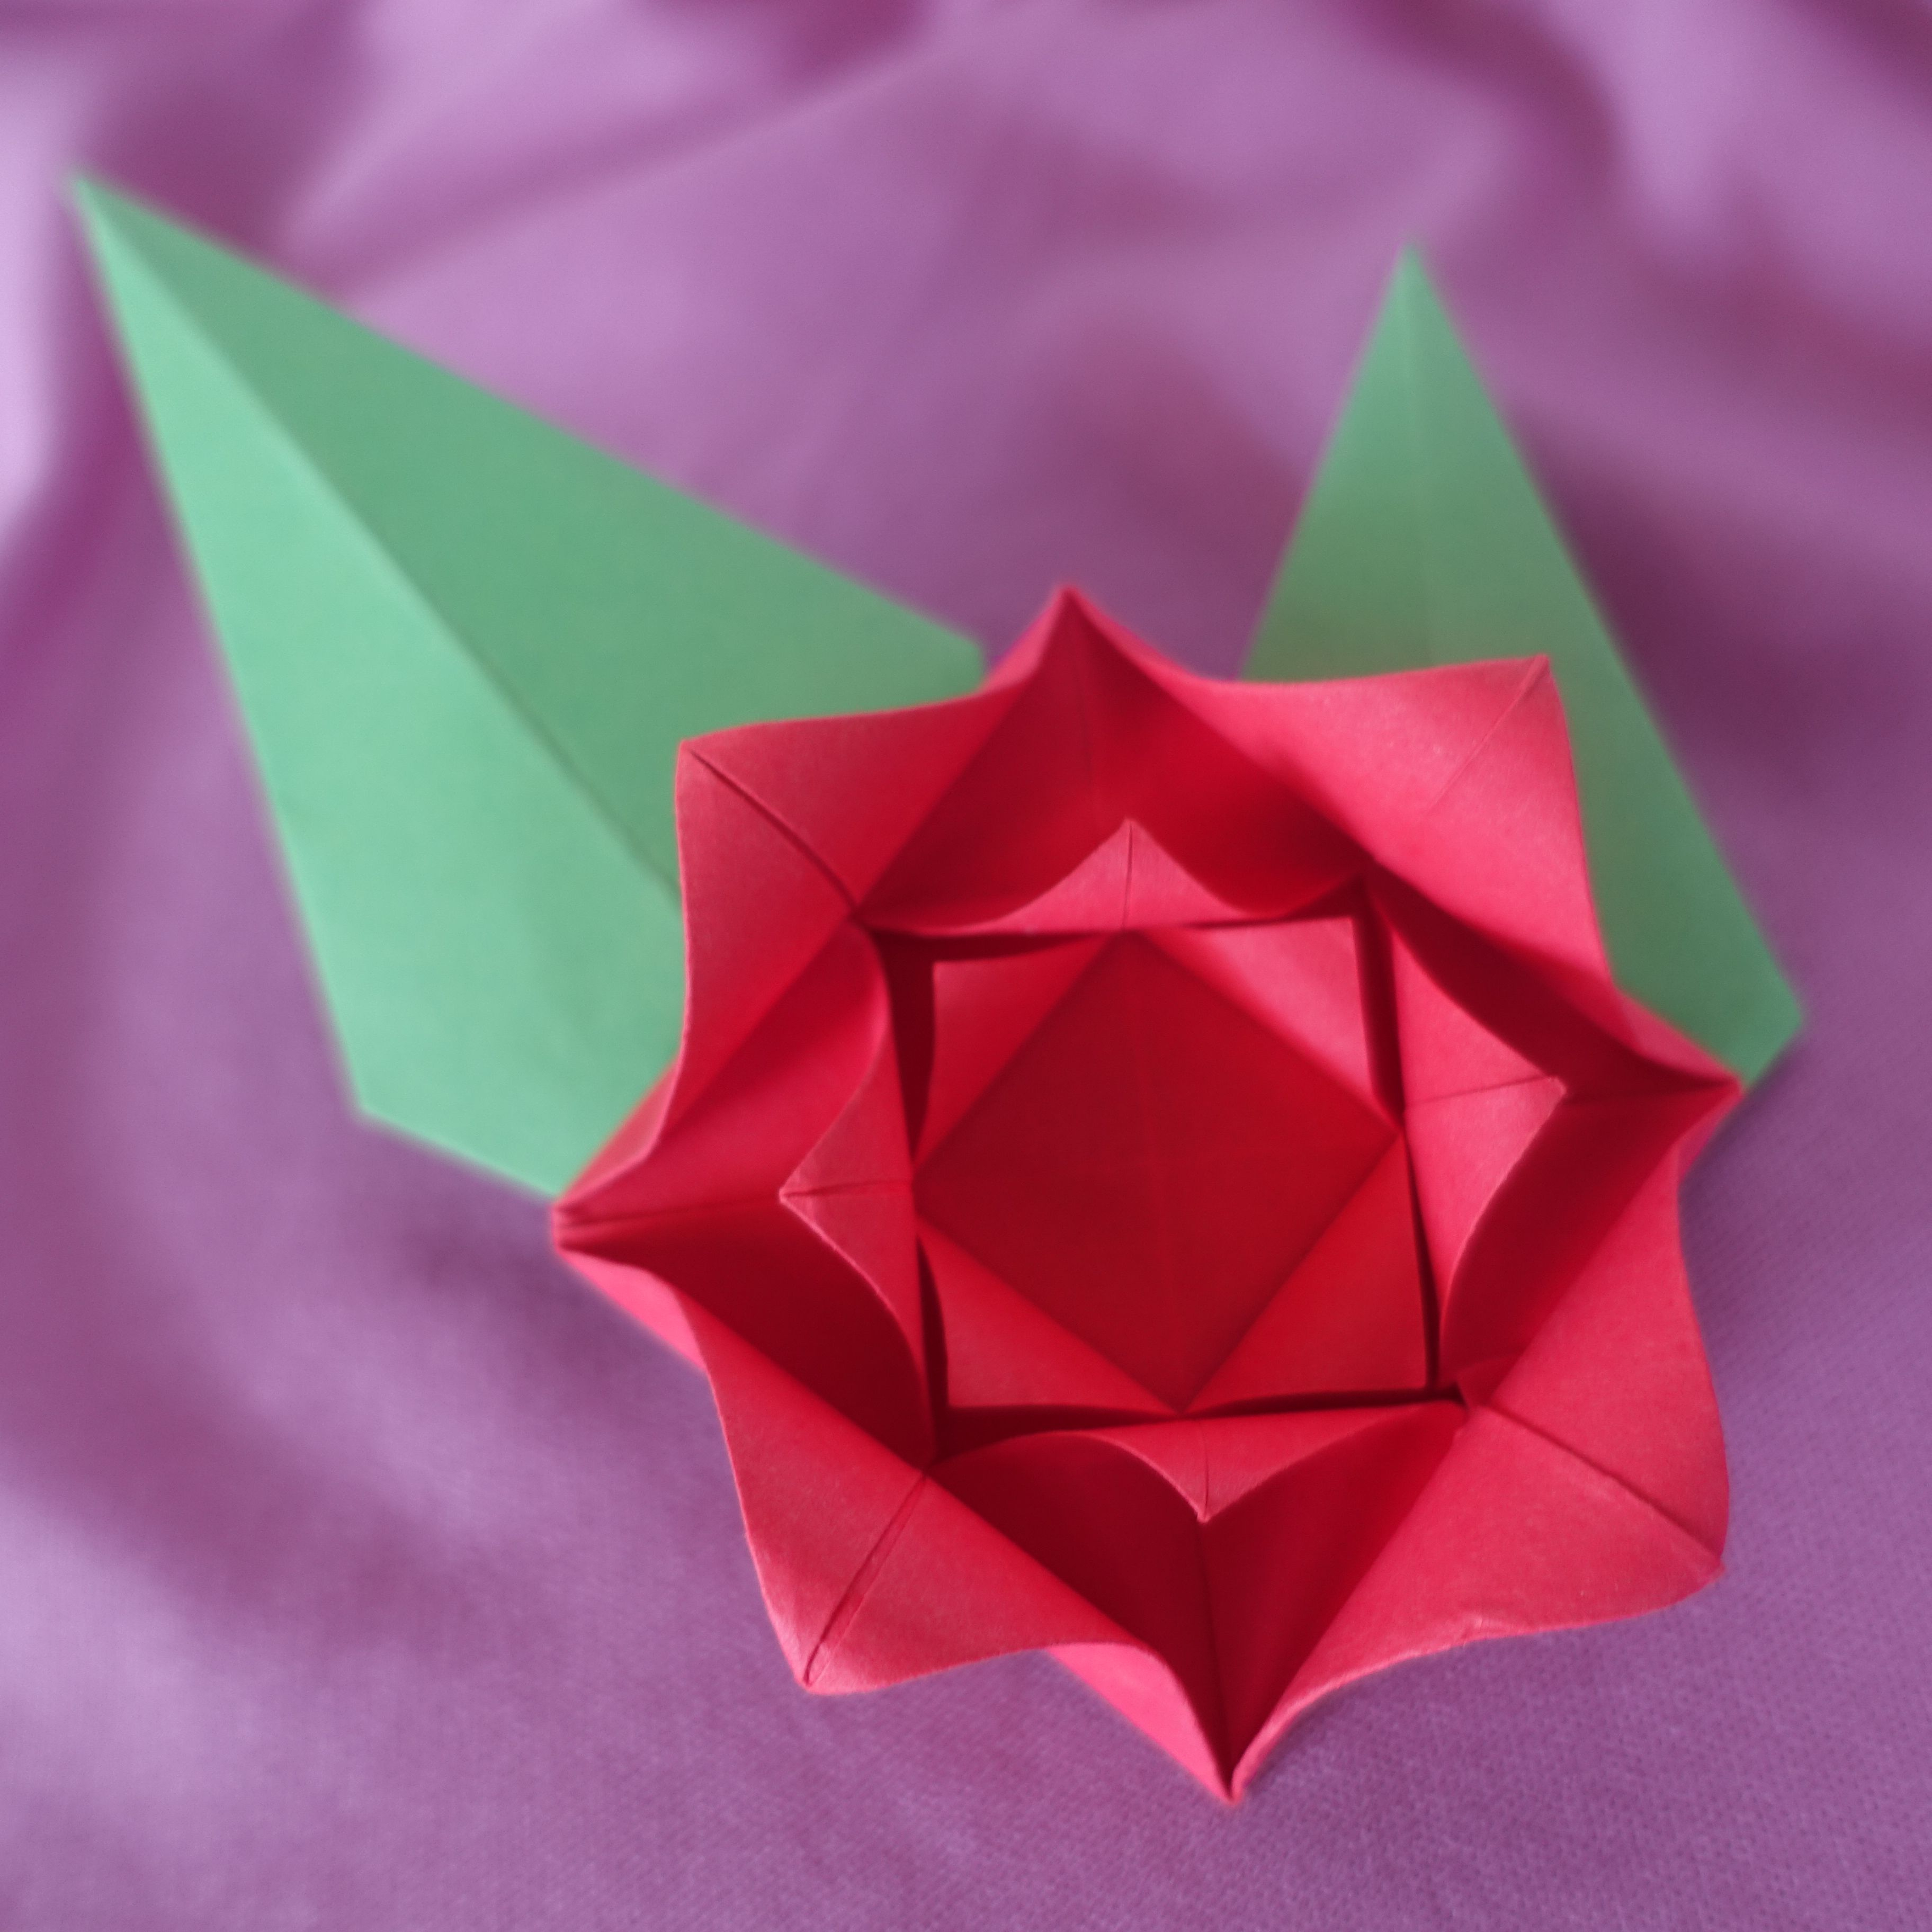 Flower Origami Easy Make An Easy Origami Rose